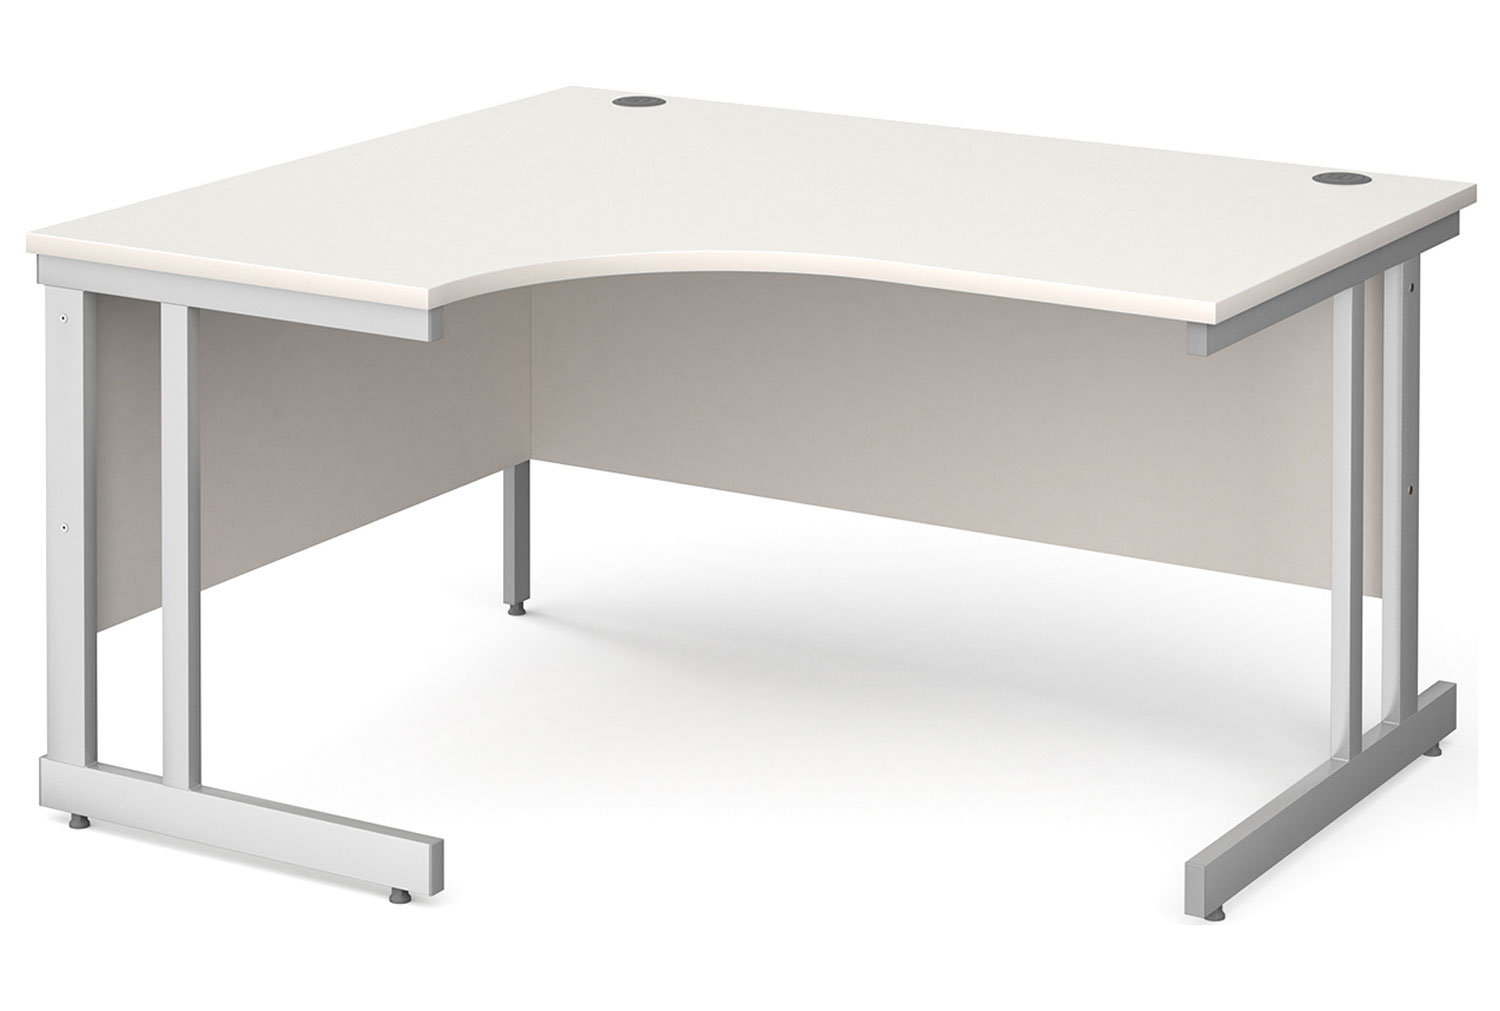 Tully II Left Hand Ergonomic Office Desk, 140wx120/80dx73h (cm), White